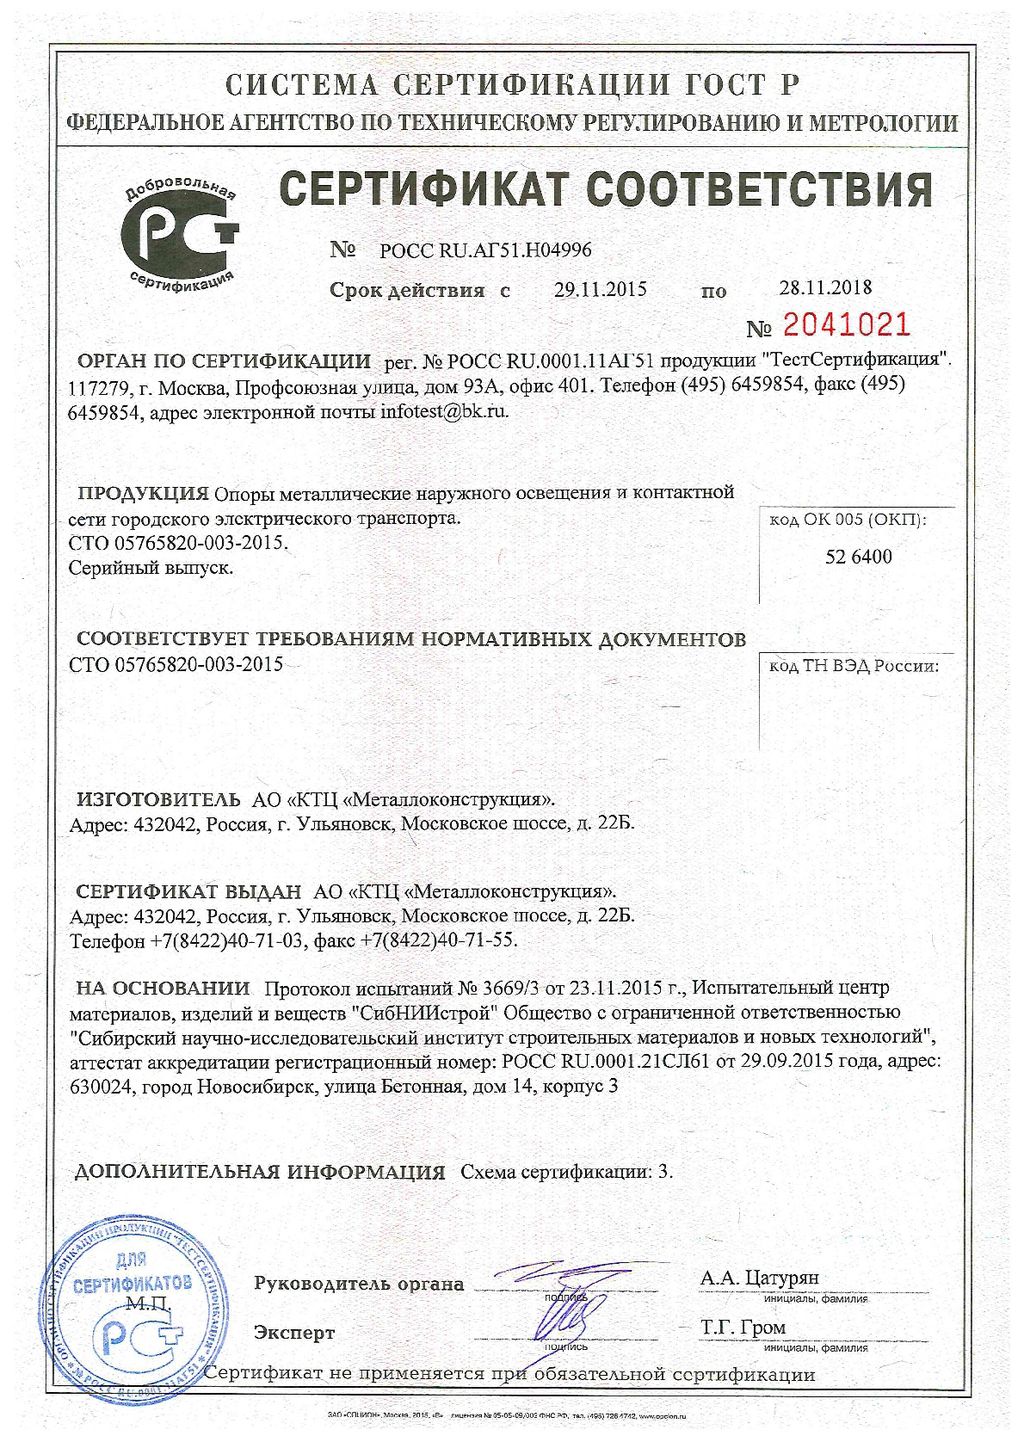 Сертификат соответствия № 2041021,  КТЦ Металлоконструкция